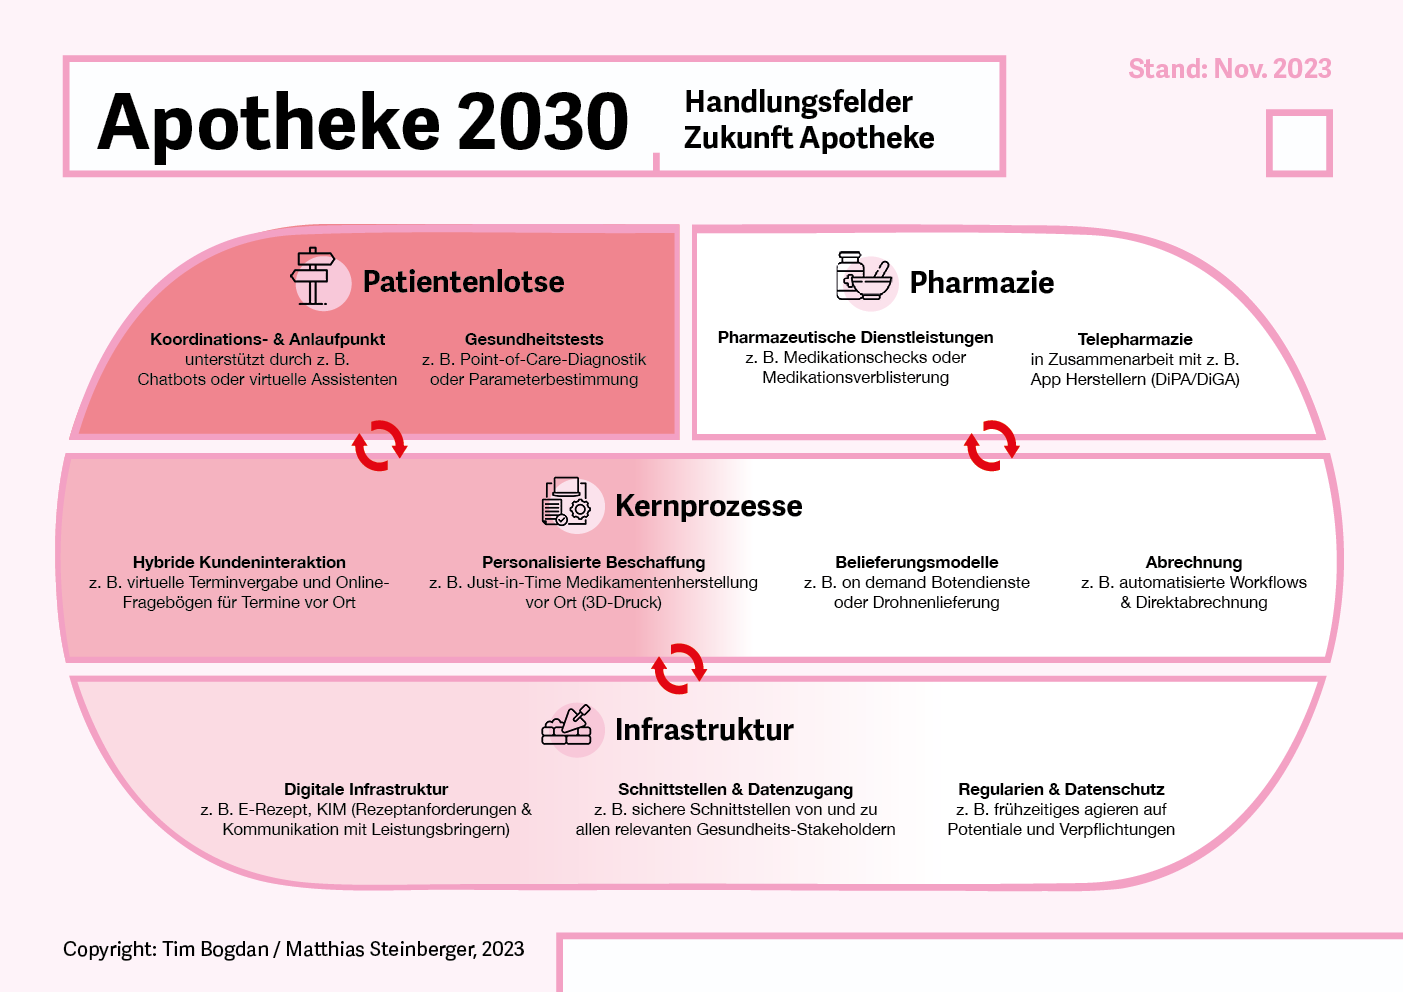 Abb. 1: Apotheke 2030: Handlungsfelder Zukunft Apotheke auf 3 Ebenen: Serviceebene, Prozessebene und Infrastruktur